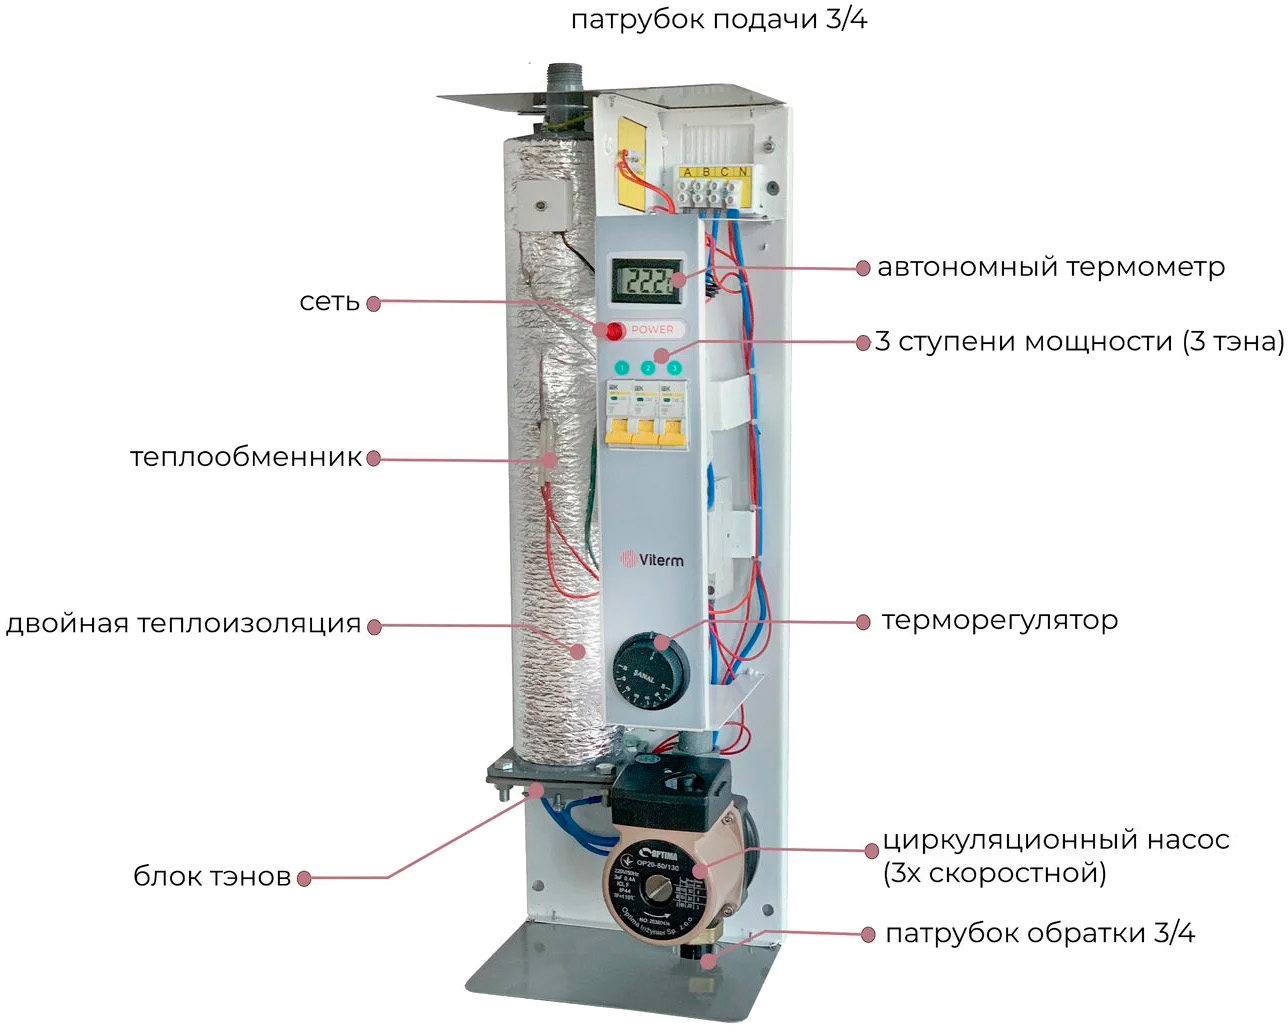 продаём Viterm Standart 6 кВт 220/380В с насосом в Украине - фото 4